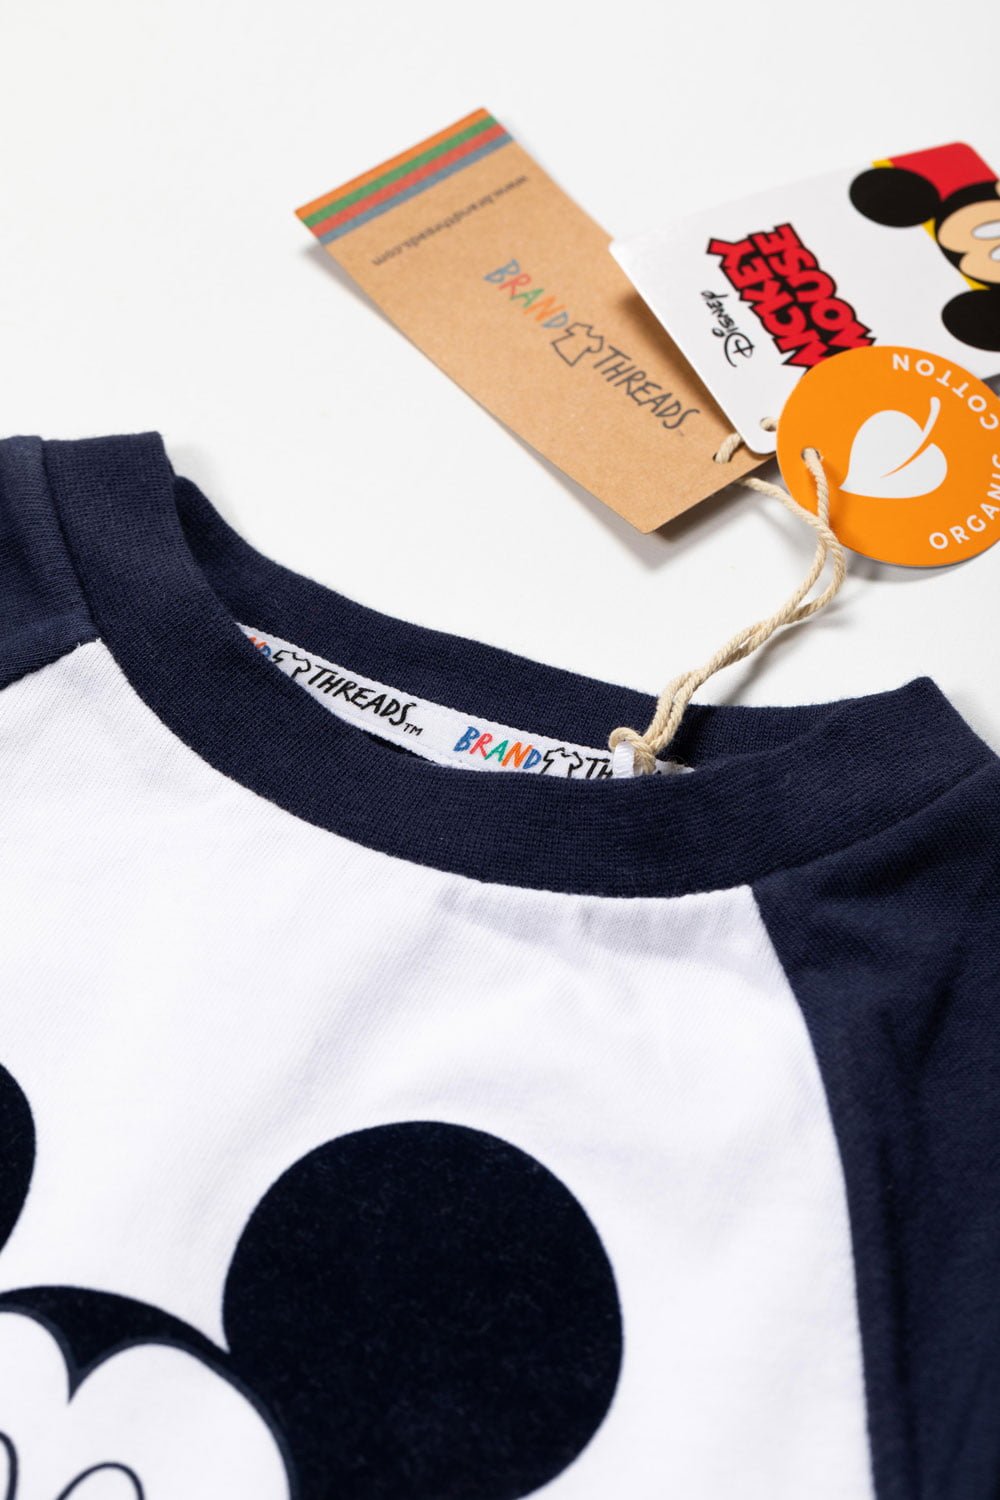 Disney - Mickey Mouse Boys Pyjamas - Brand Threads